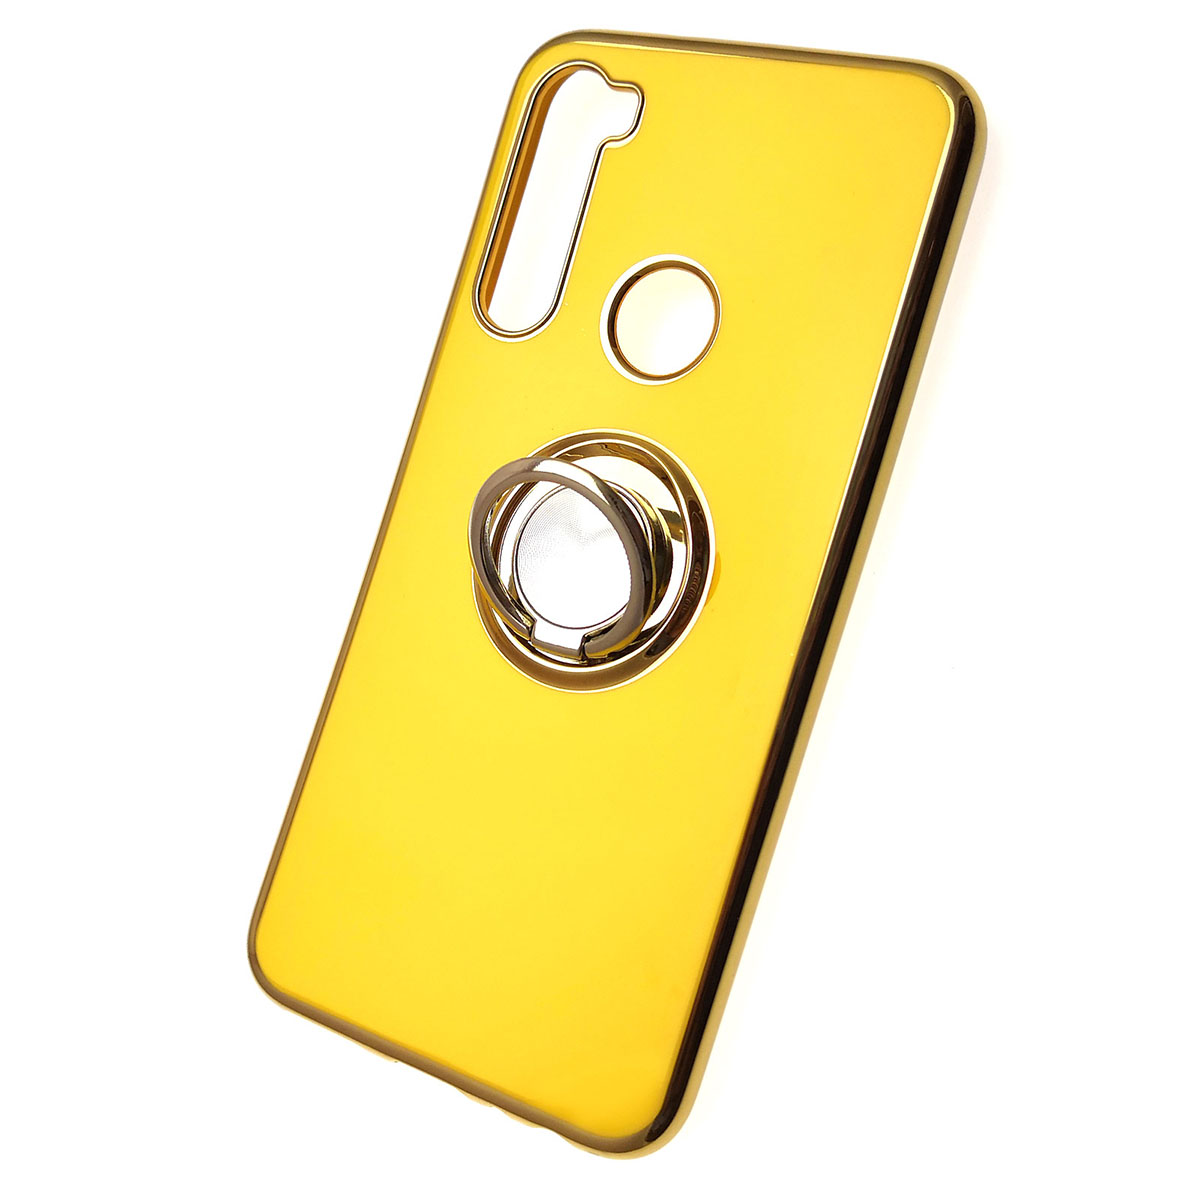 Чехол накладка для XIAOMI Redmi Note 8, силикон, кольцо держатель, цвет желтый.